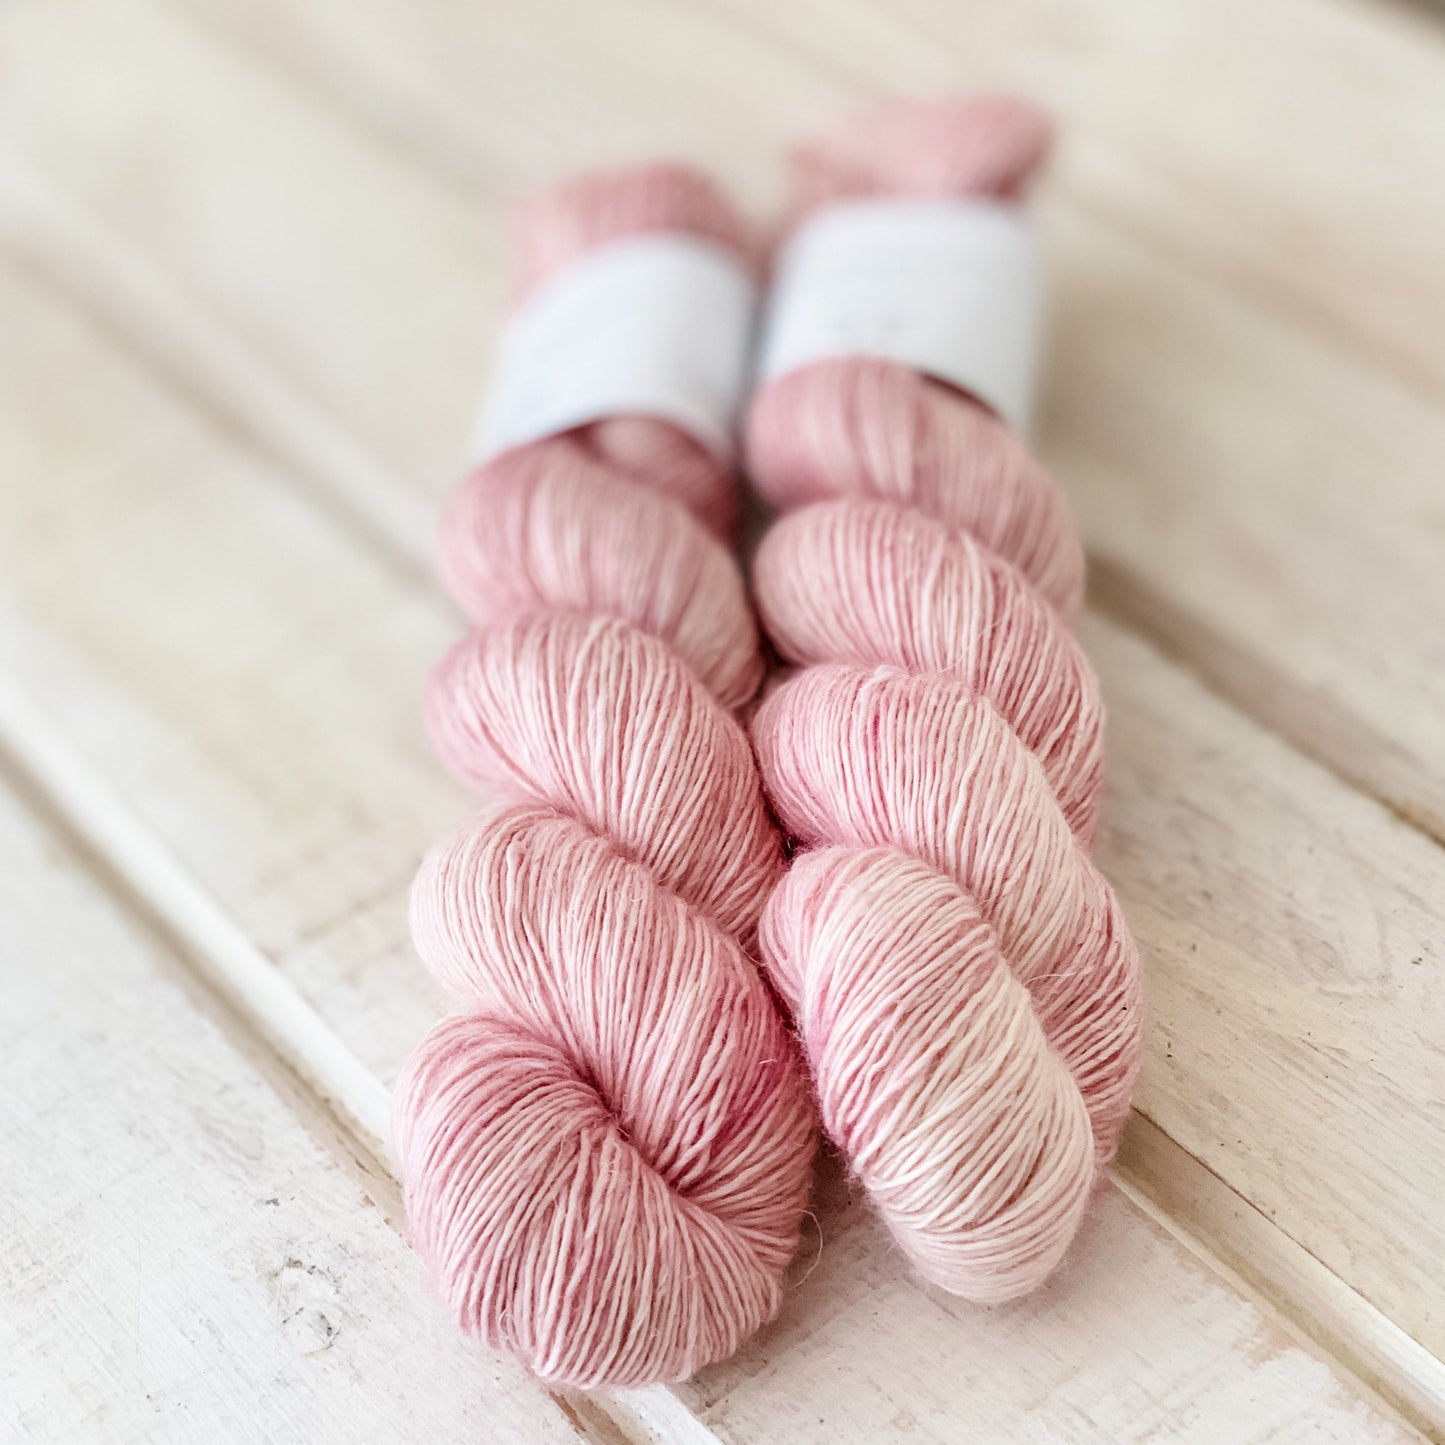 Steppe - Lysefjord Single - Tonal Yarn - Hand dyed yarn